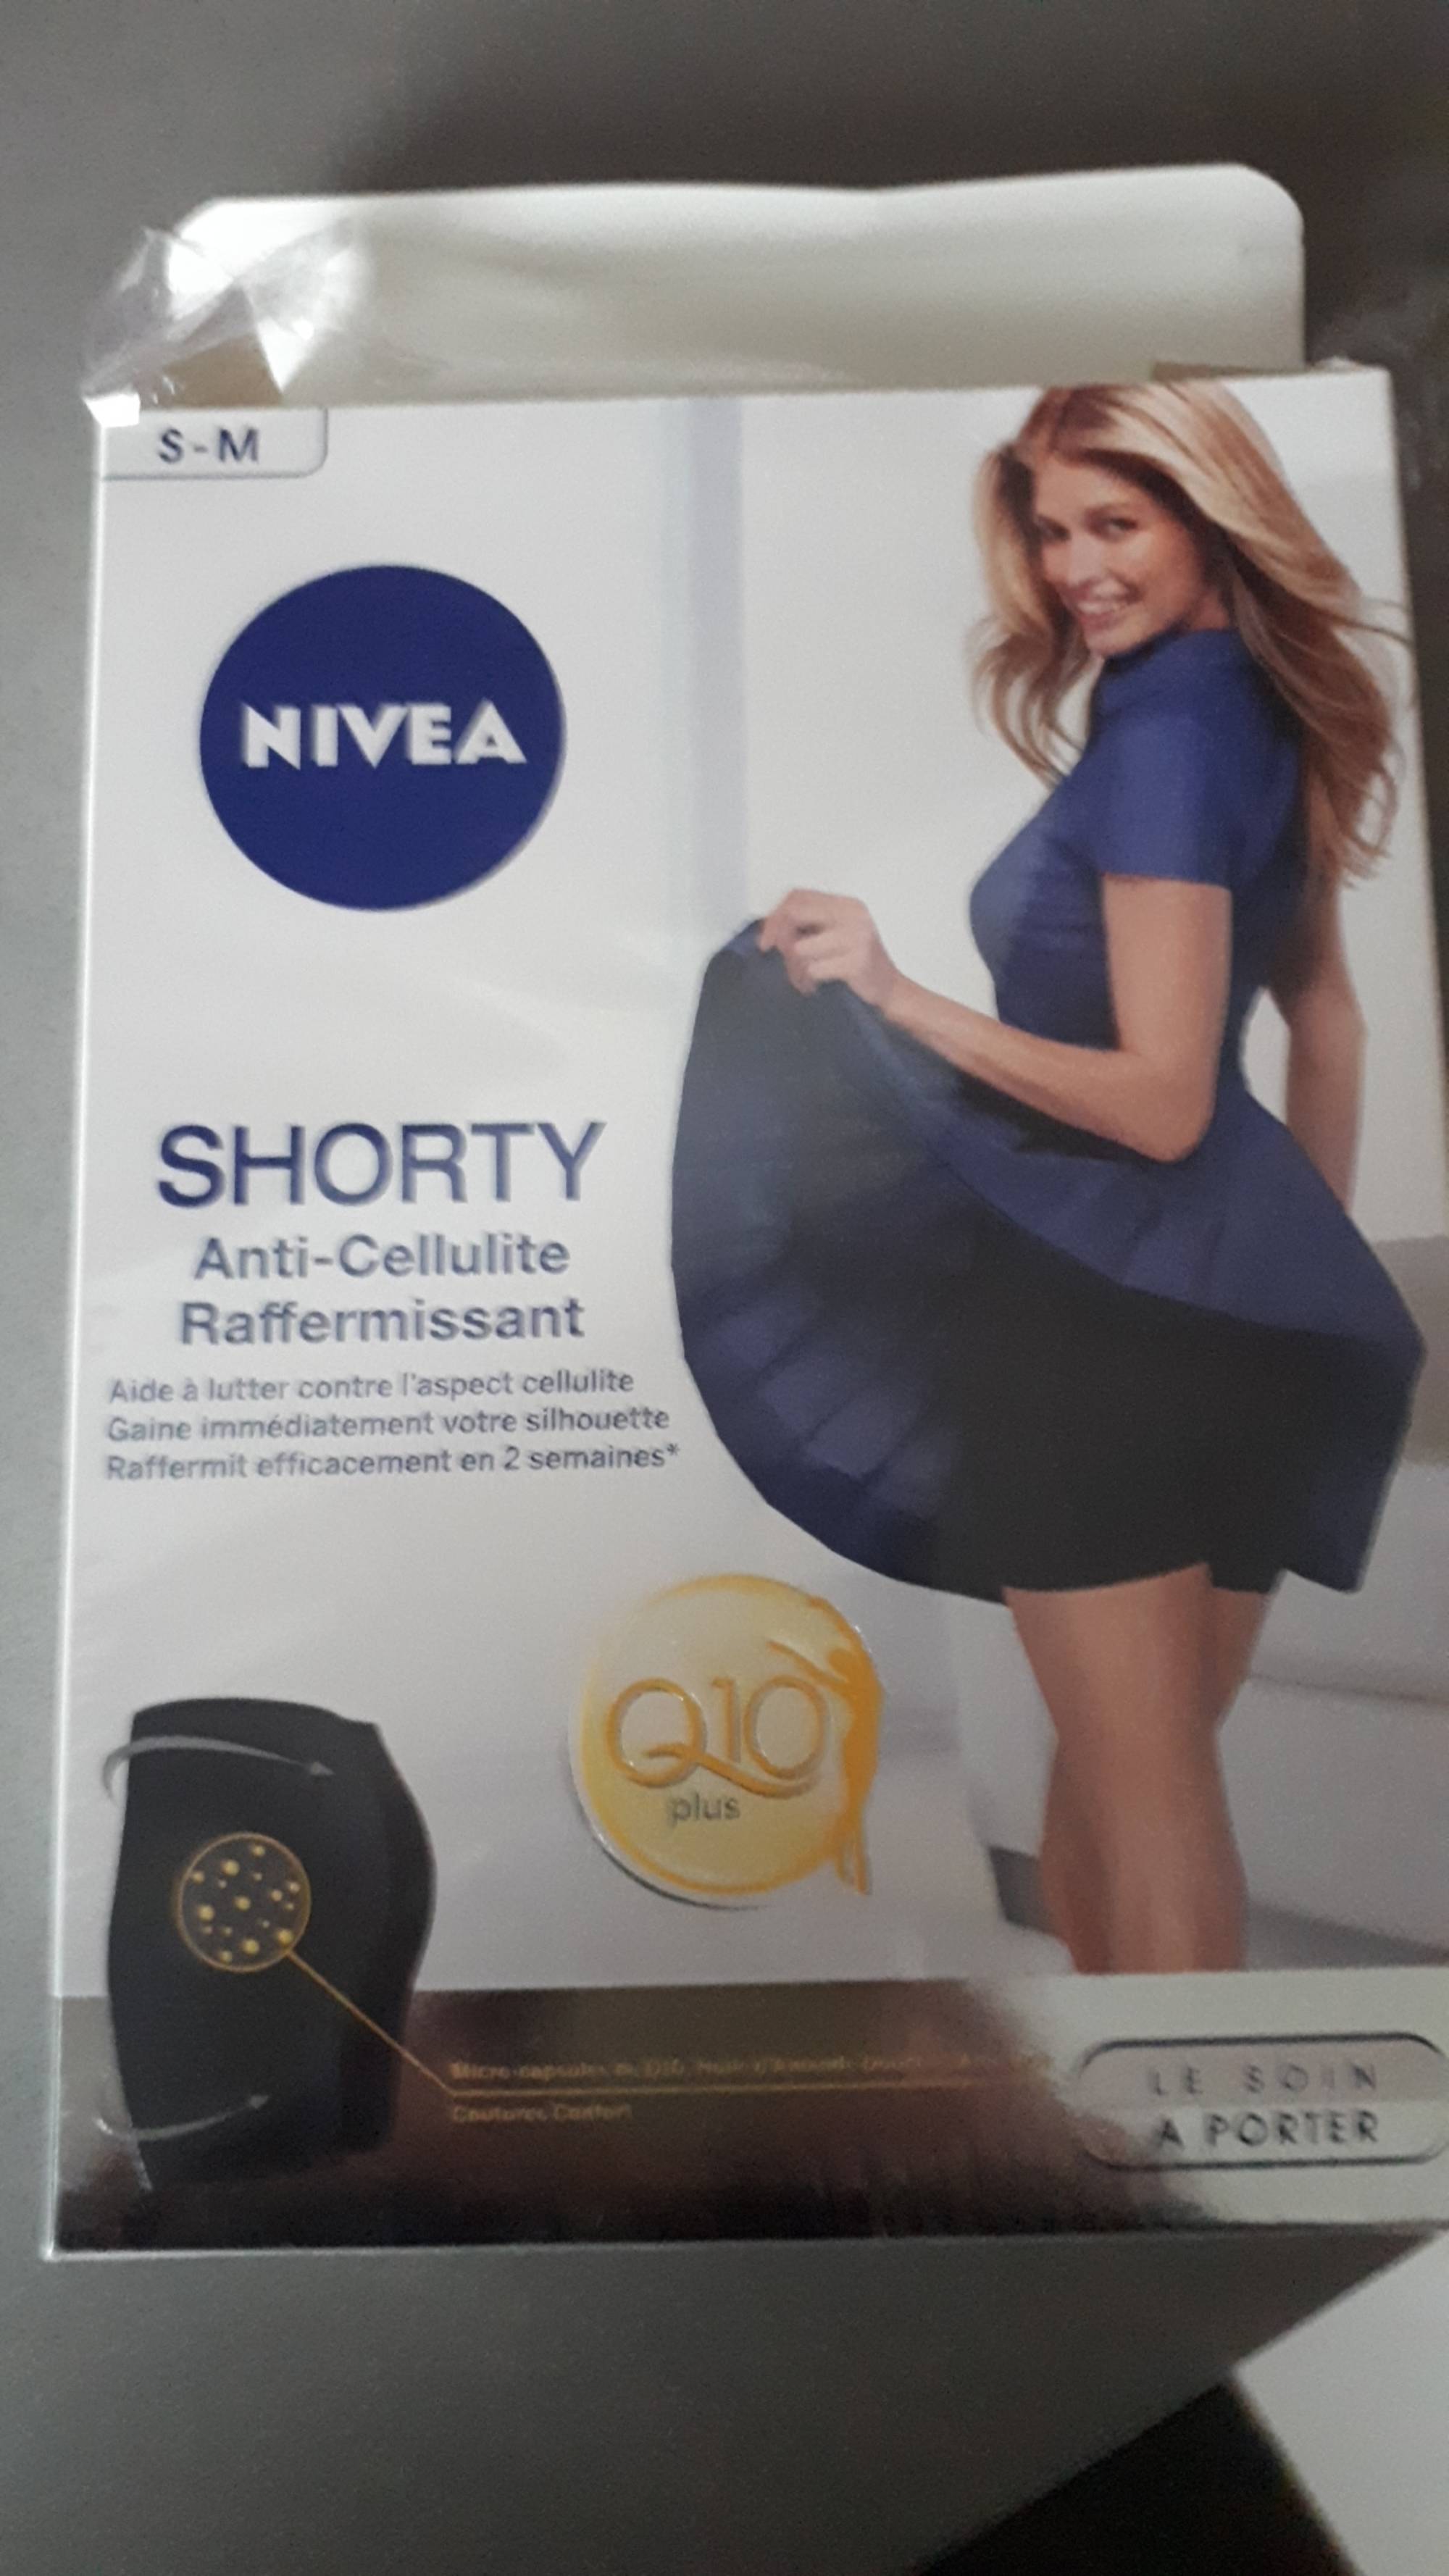 NIVEA - Shorty Q10 plus - Anti-cellulite raffermissant